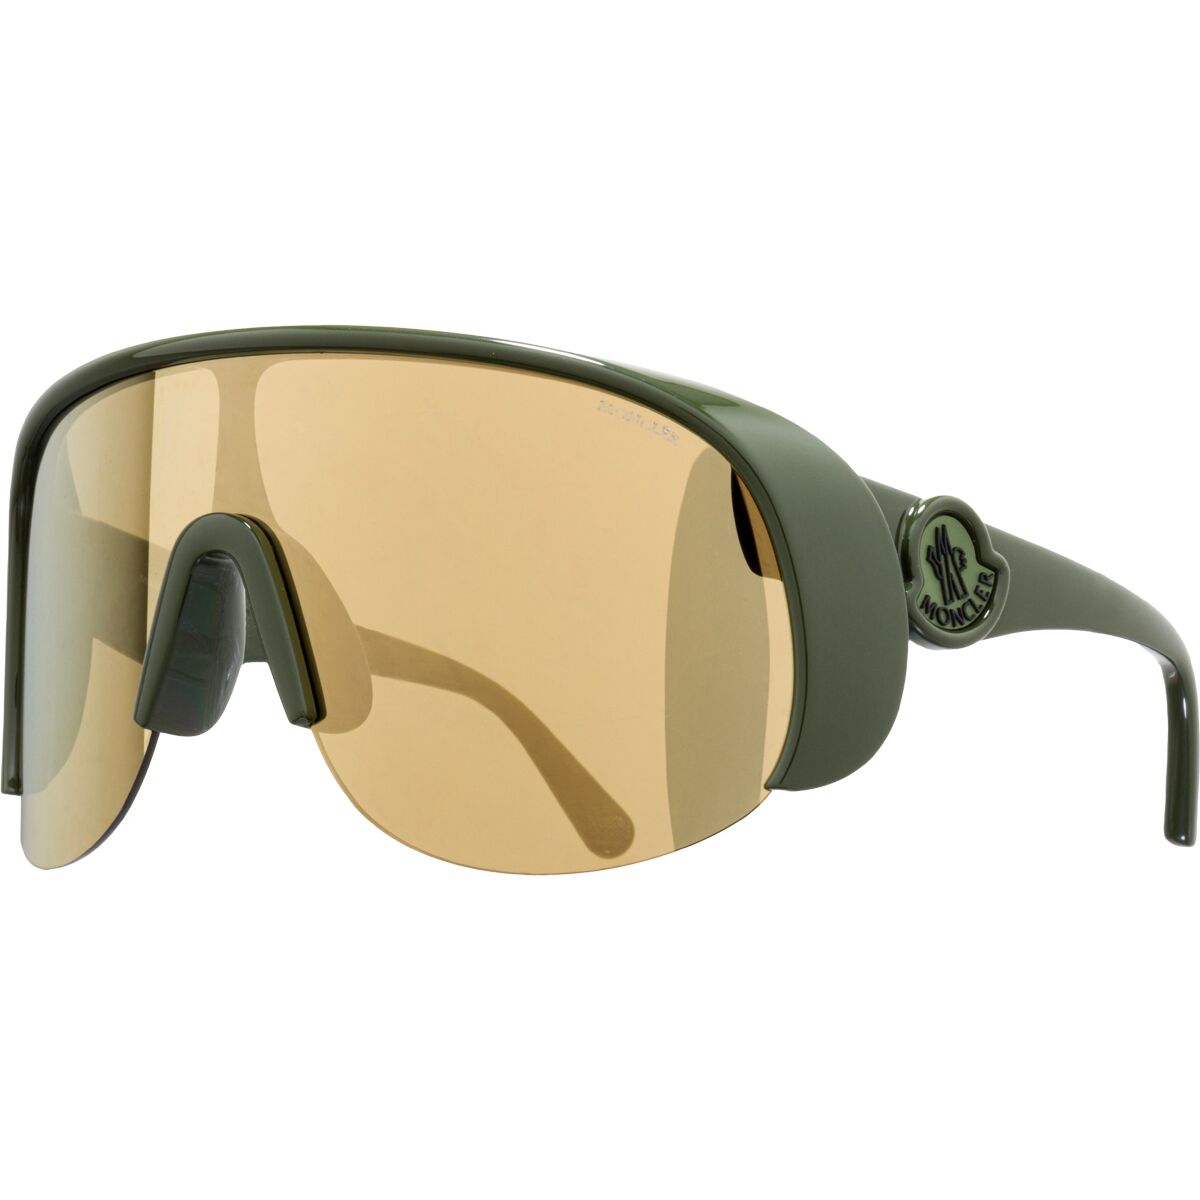 Moncler Grenoble Phantom Shield Sunglasses